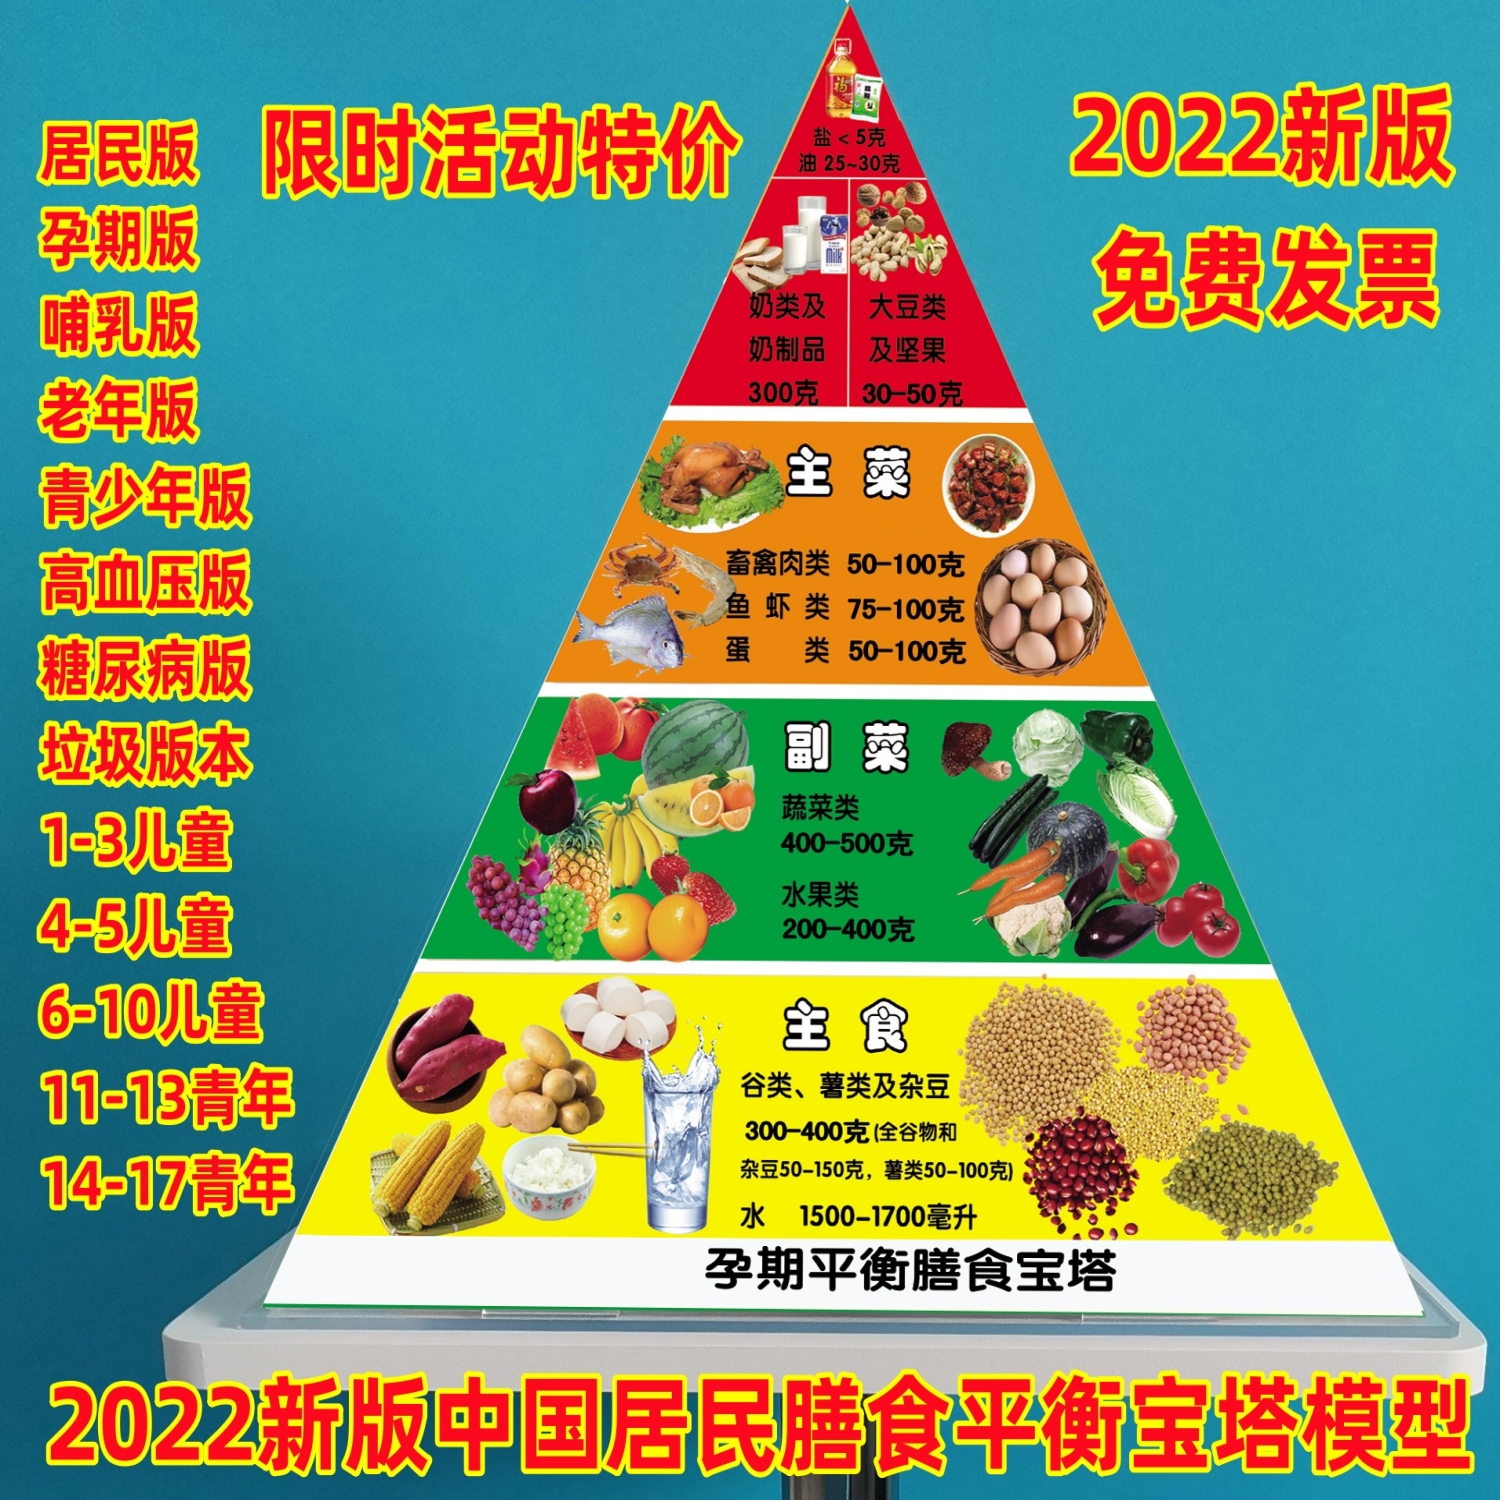 2022版中国居民膳食平衡宝塔模型糖尿病老年儿童膳食金字宝塔模型